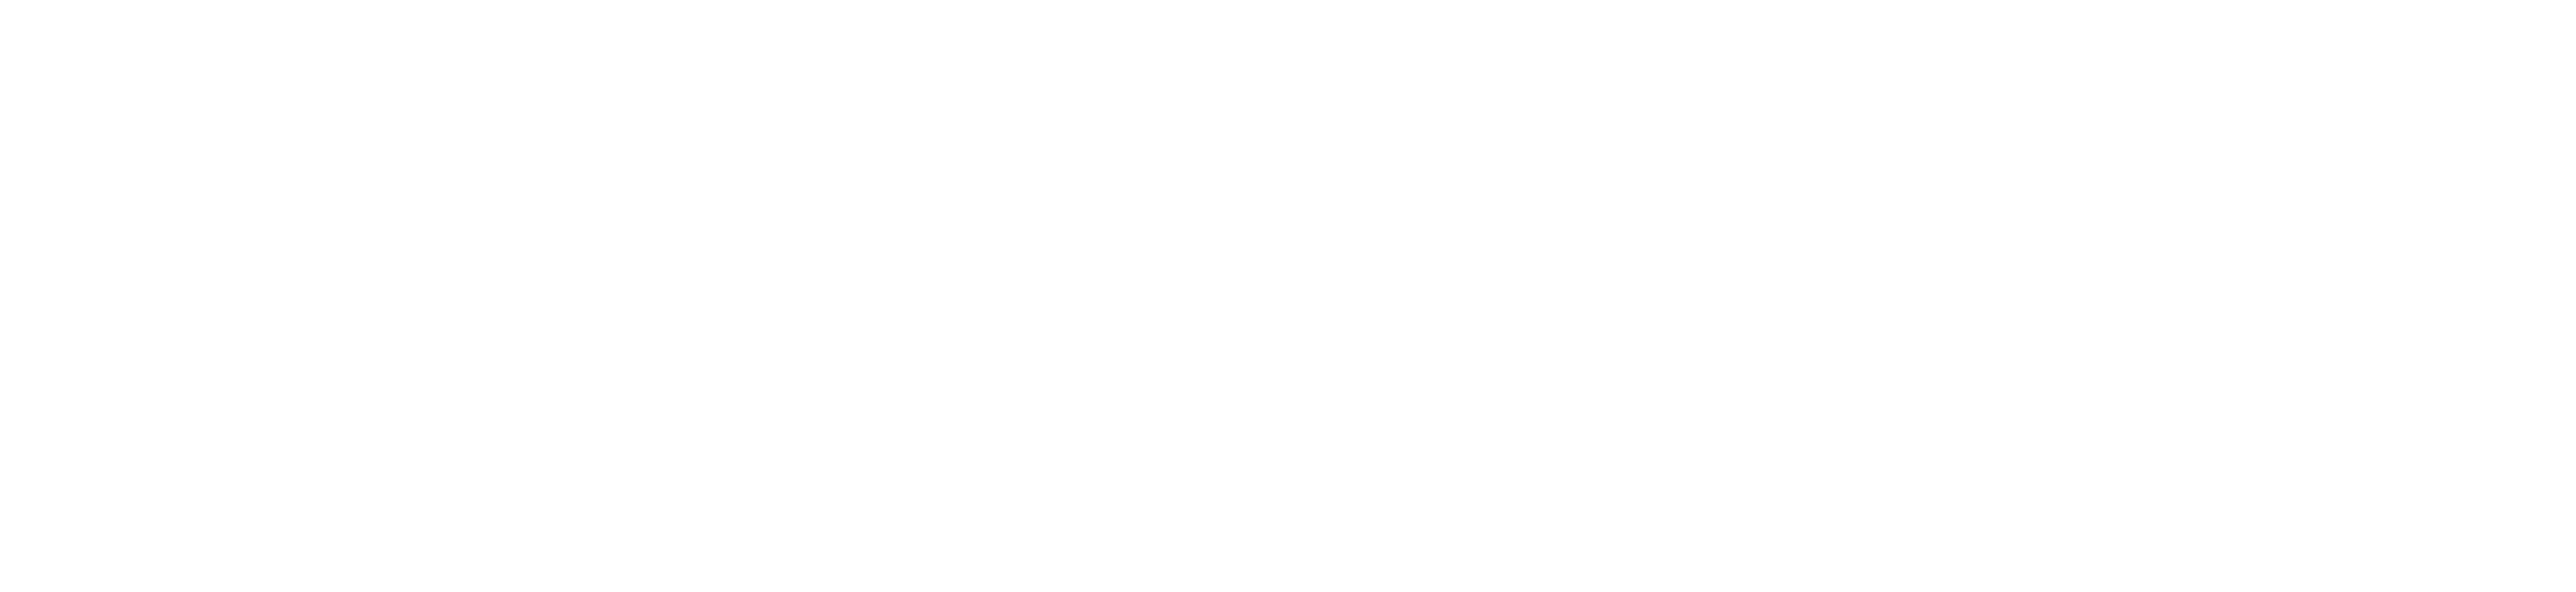 True Crime Story: Smugshot